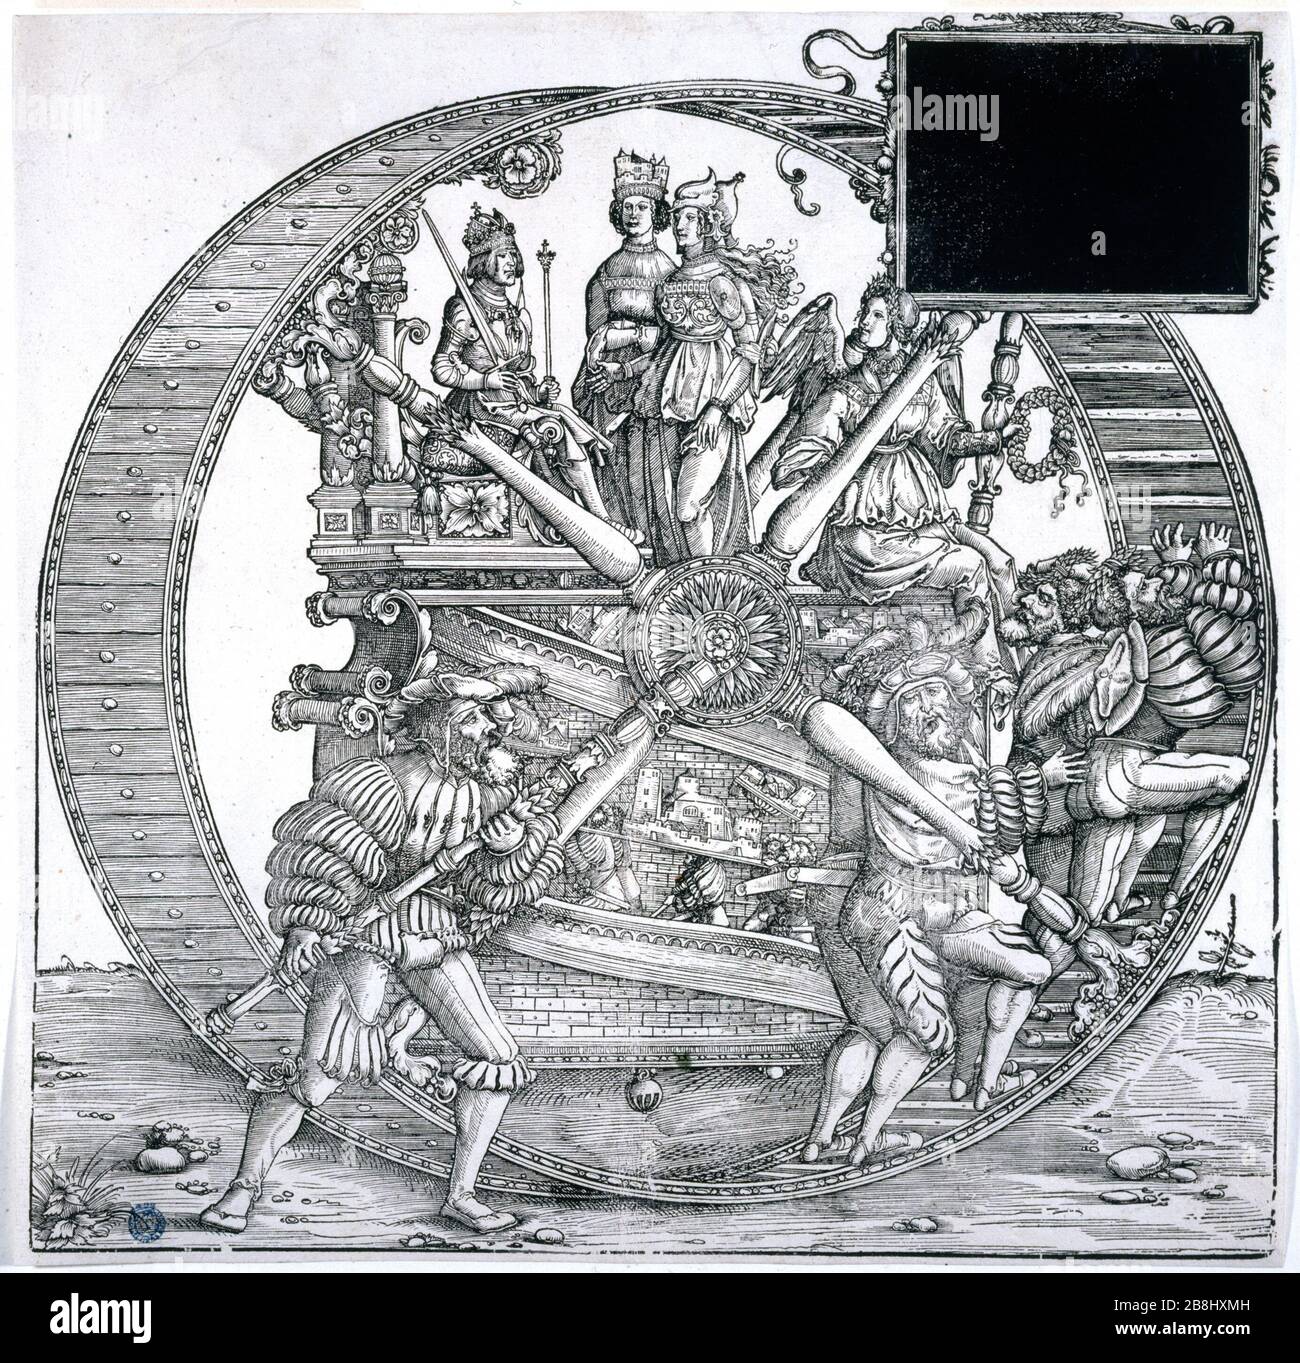 TRIOMPHE DE MAXIMILIEN, UNE GRANDE ROUE HANS BURGKMAIR (1473-1531). 'Le Triomphe de Maximilien, une grande roue'. Bois, 1512-1519. Musée des Beaux-Arts de la ville de Paris, petit Palais. Banque D'Images